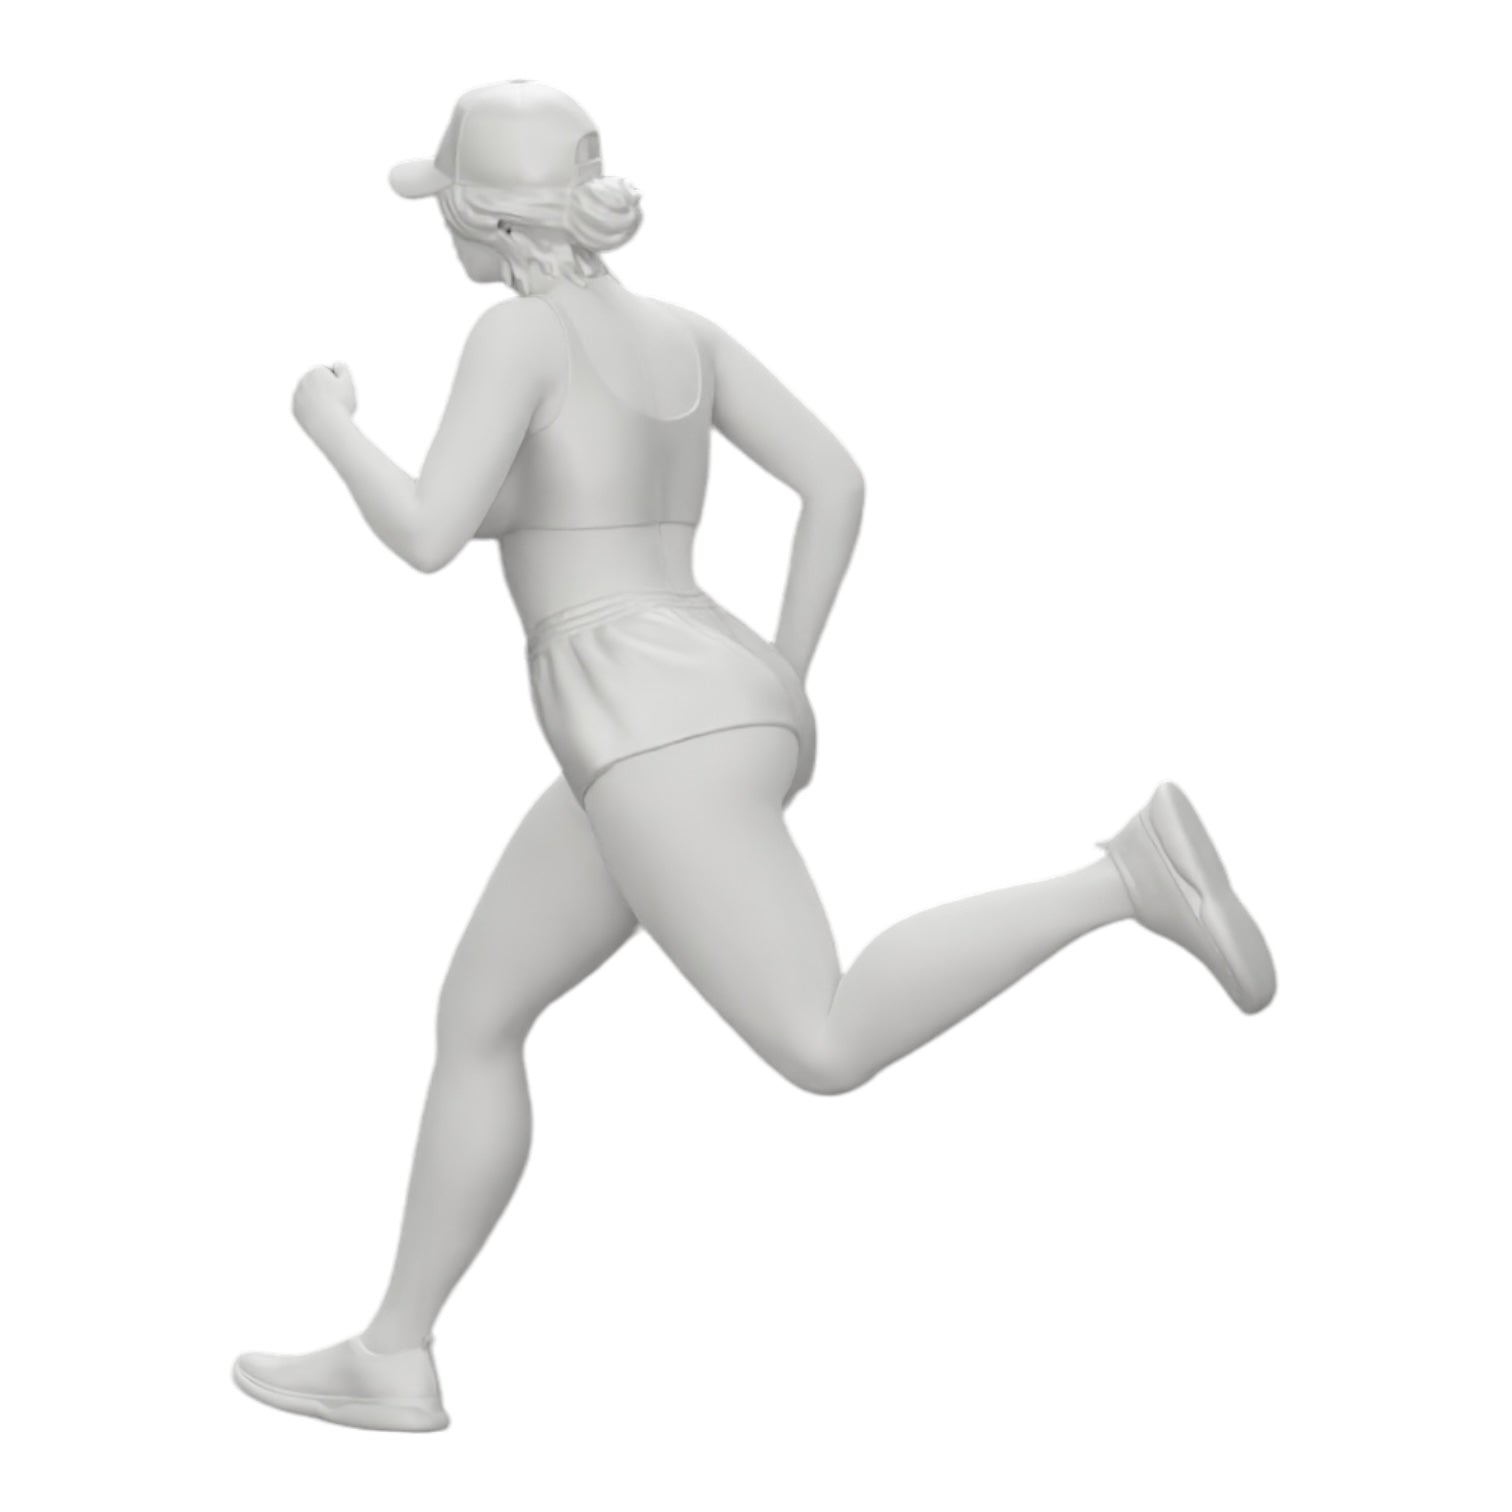 Diorama Modellbau Produktfoto 0: Joggerin/ Sportlerin läuft in Shorts und Mütze (Ref Nr. A45)